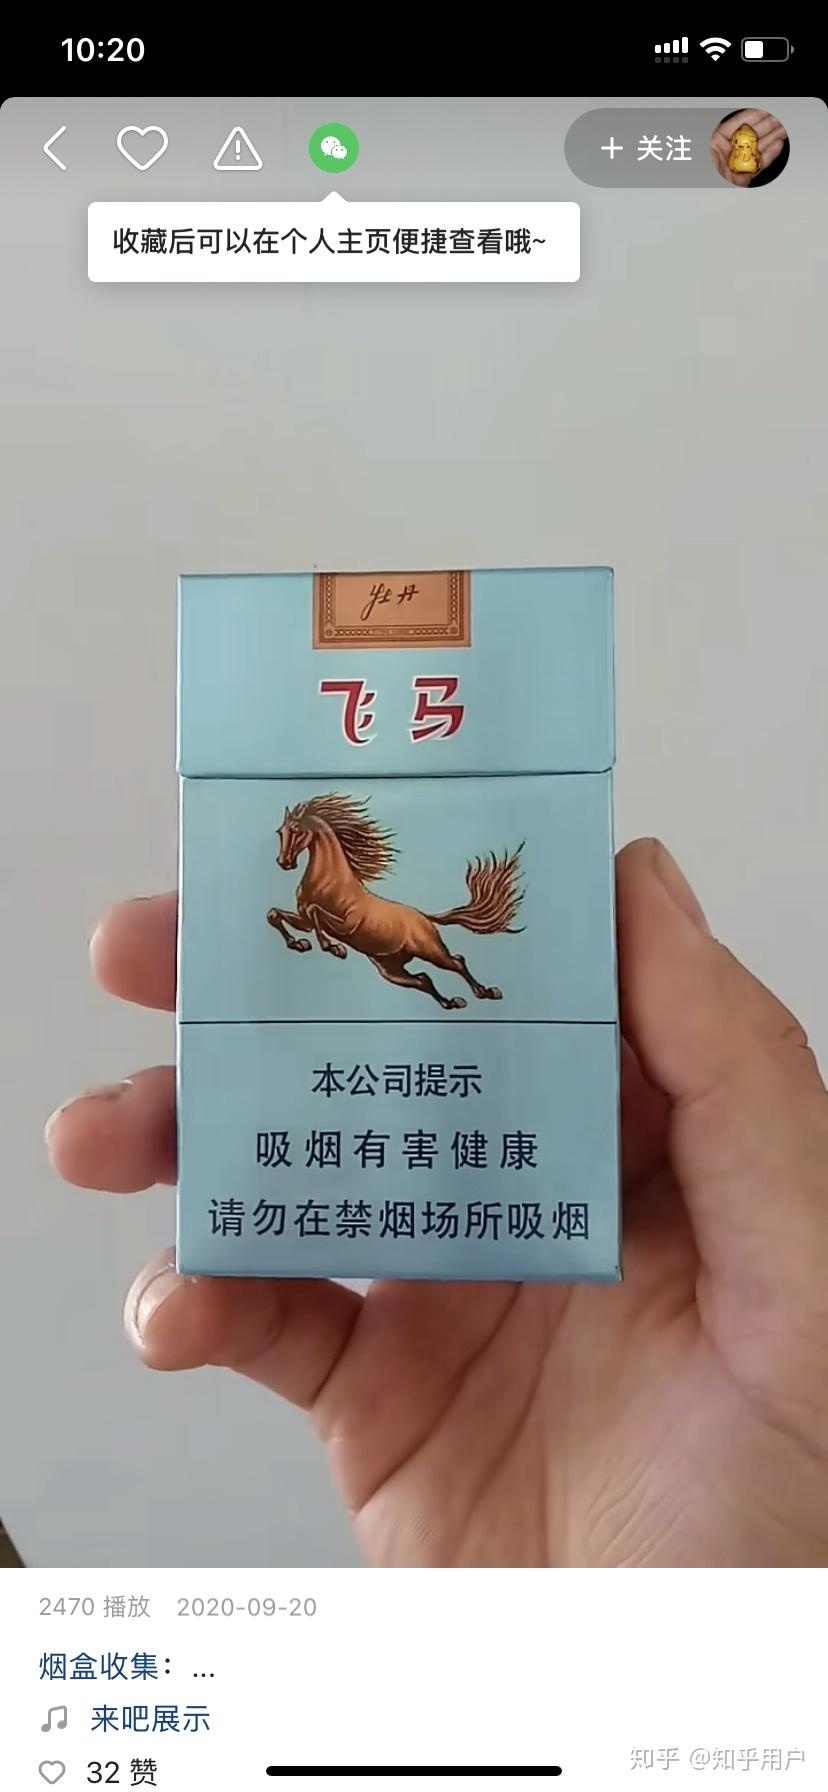 牡丹飞马香烟图片